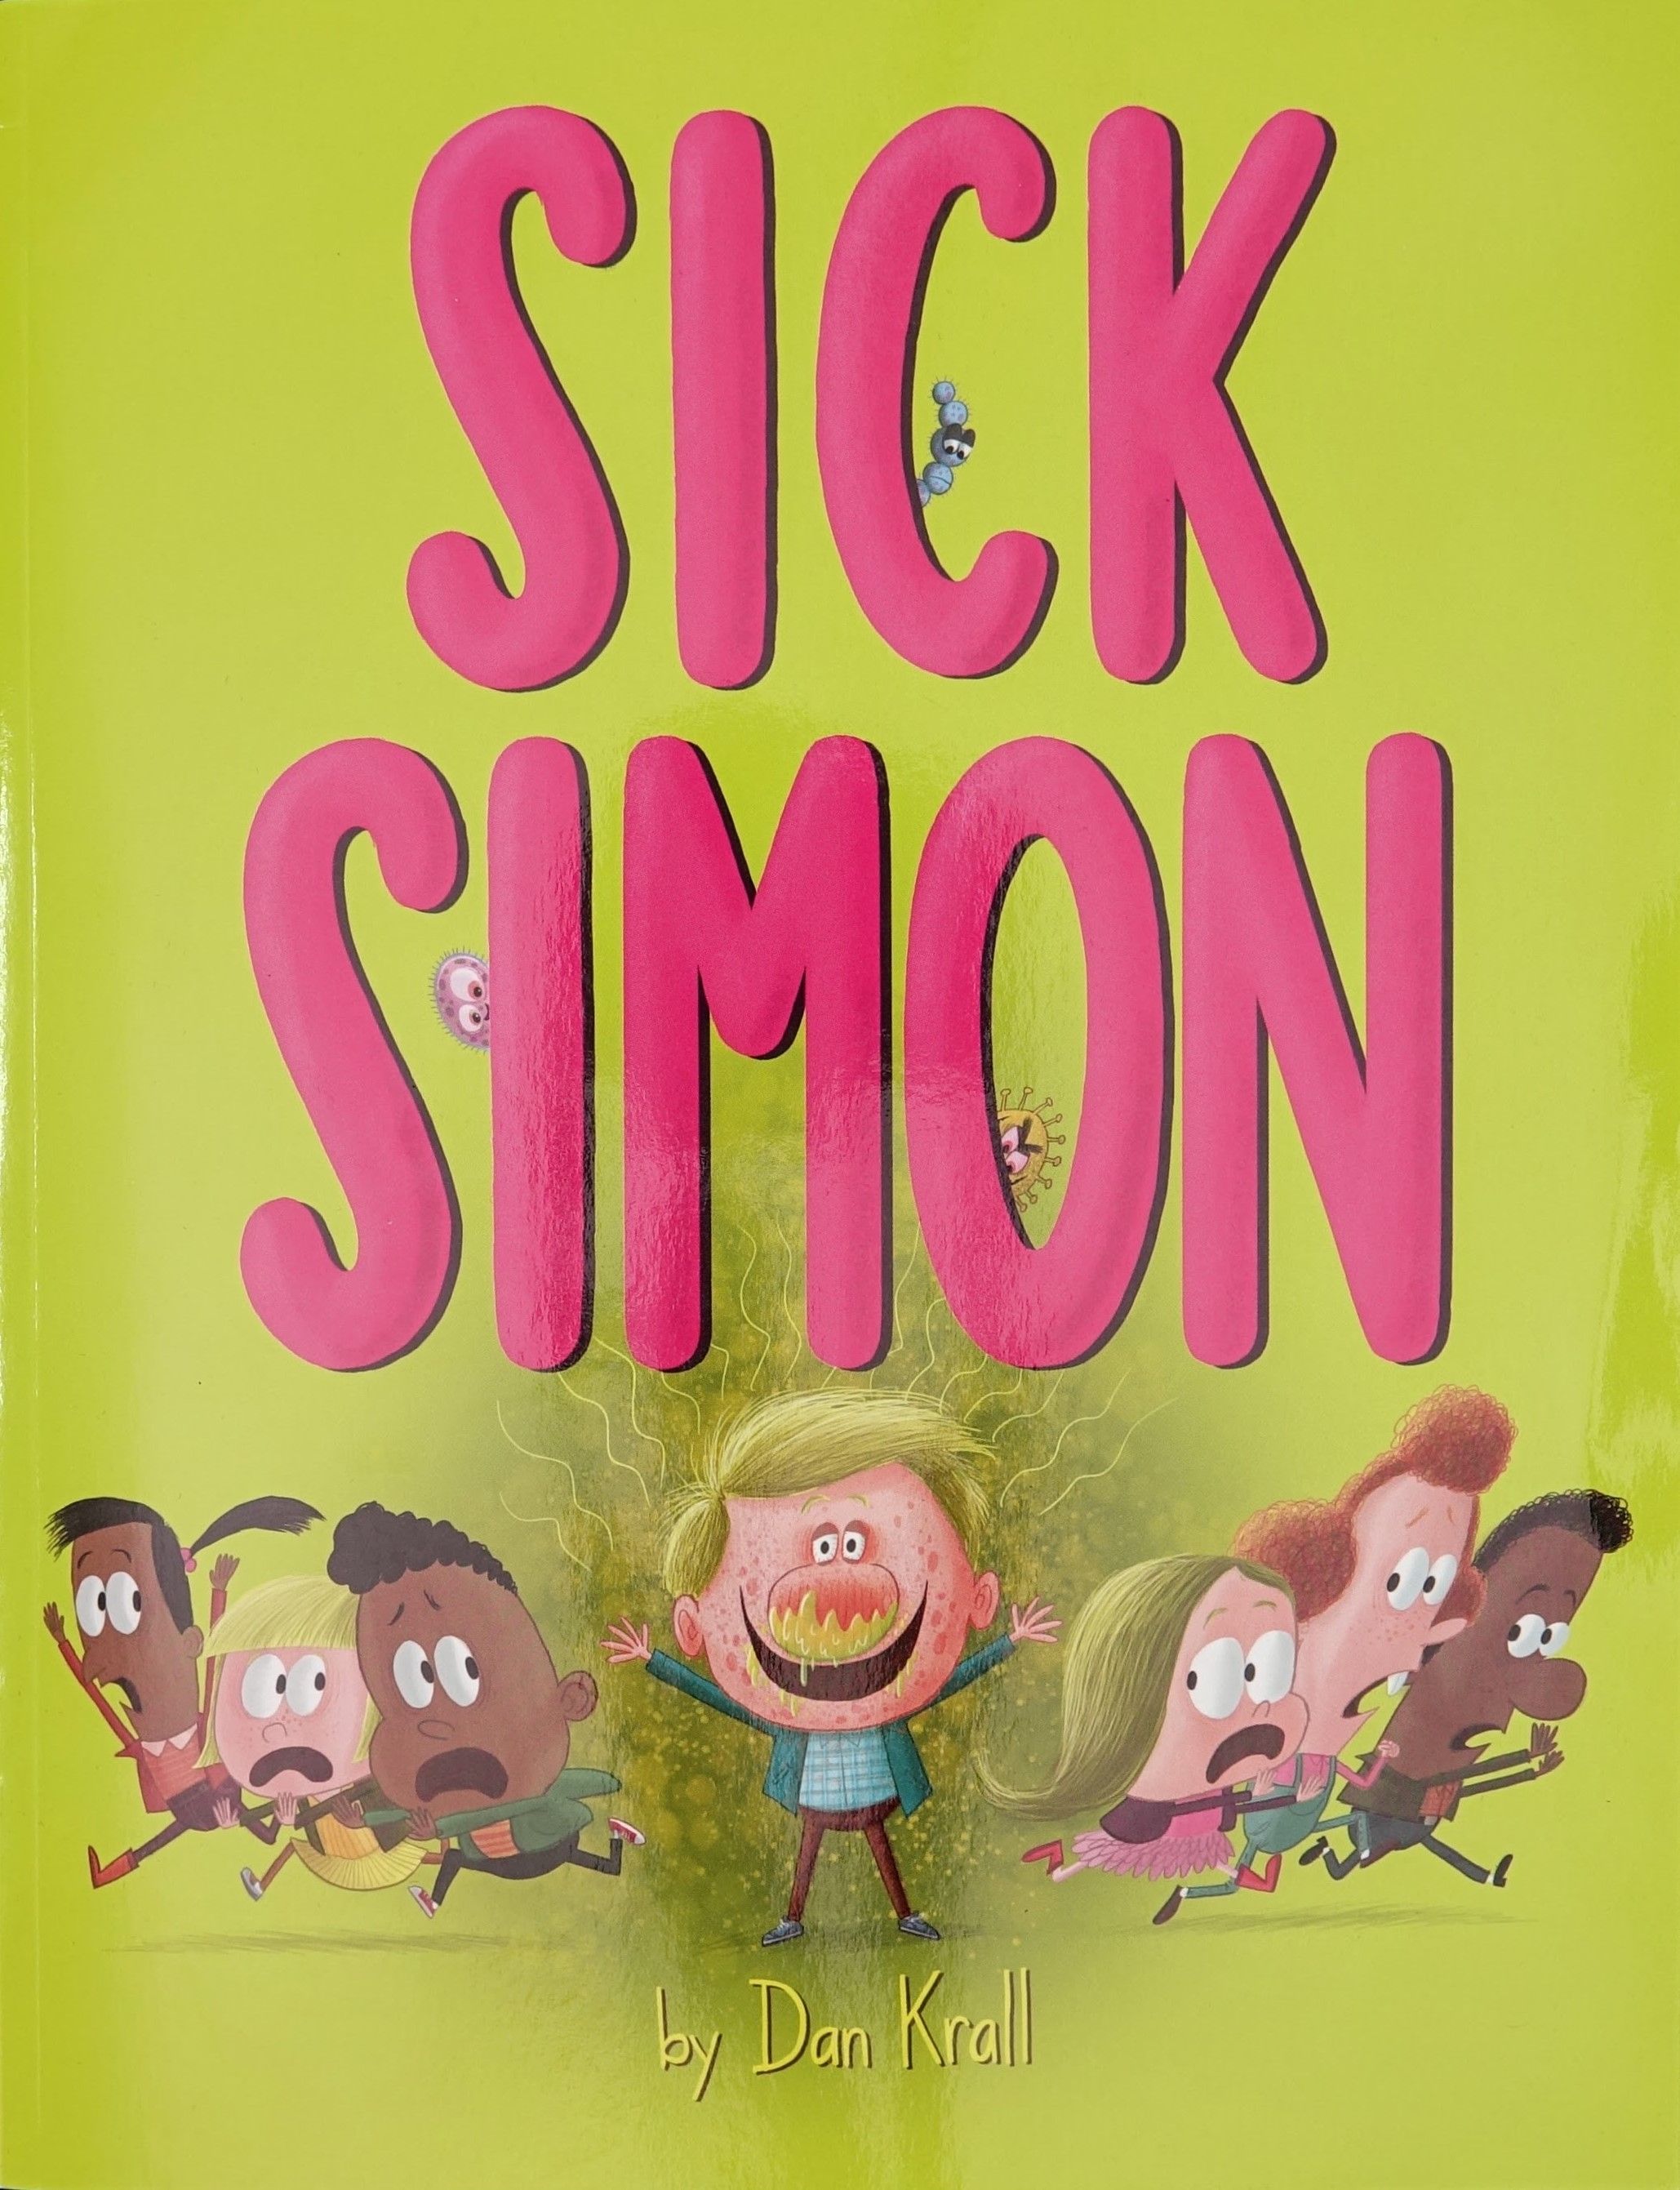 Sick Simon